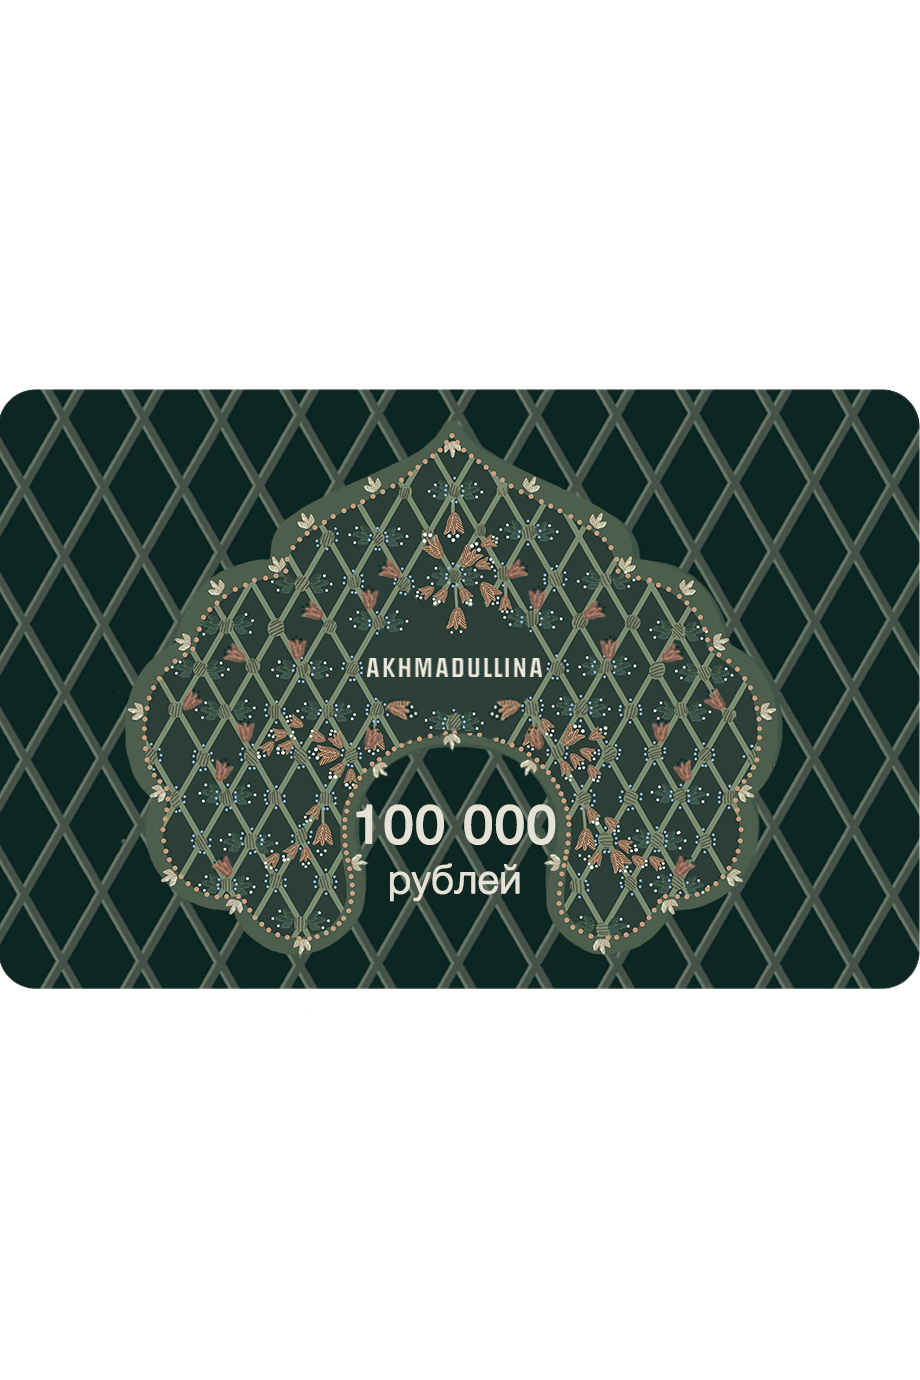 Подарочный сертификат 100 000 руб.